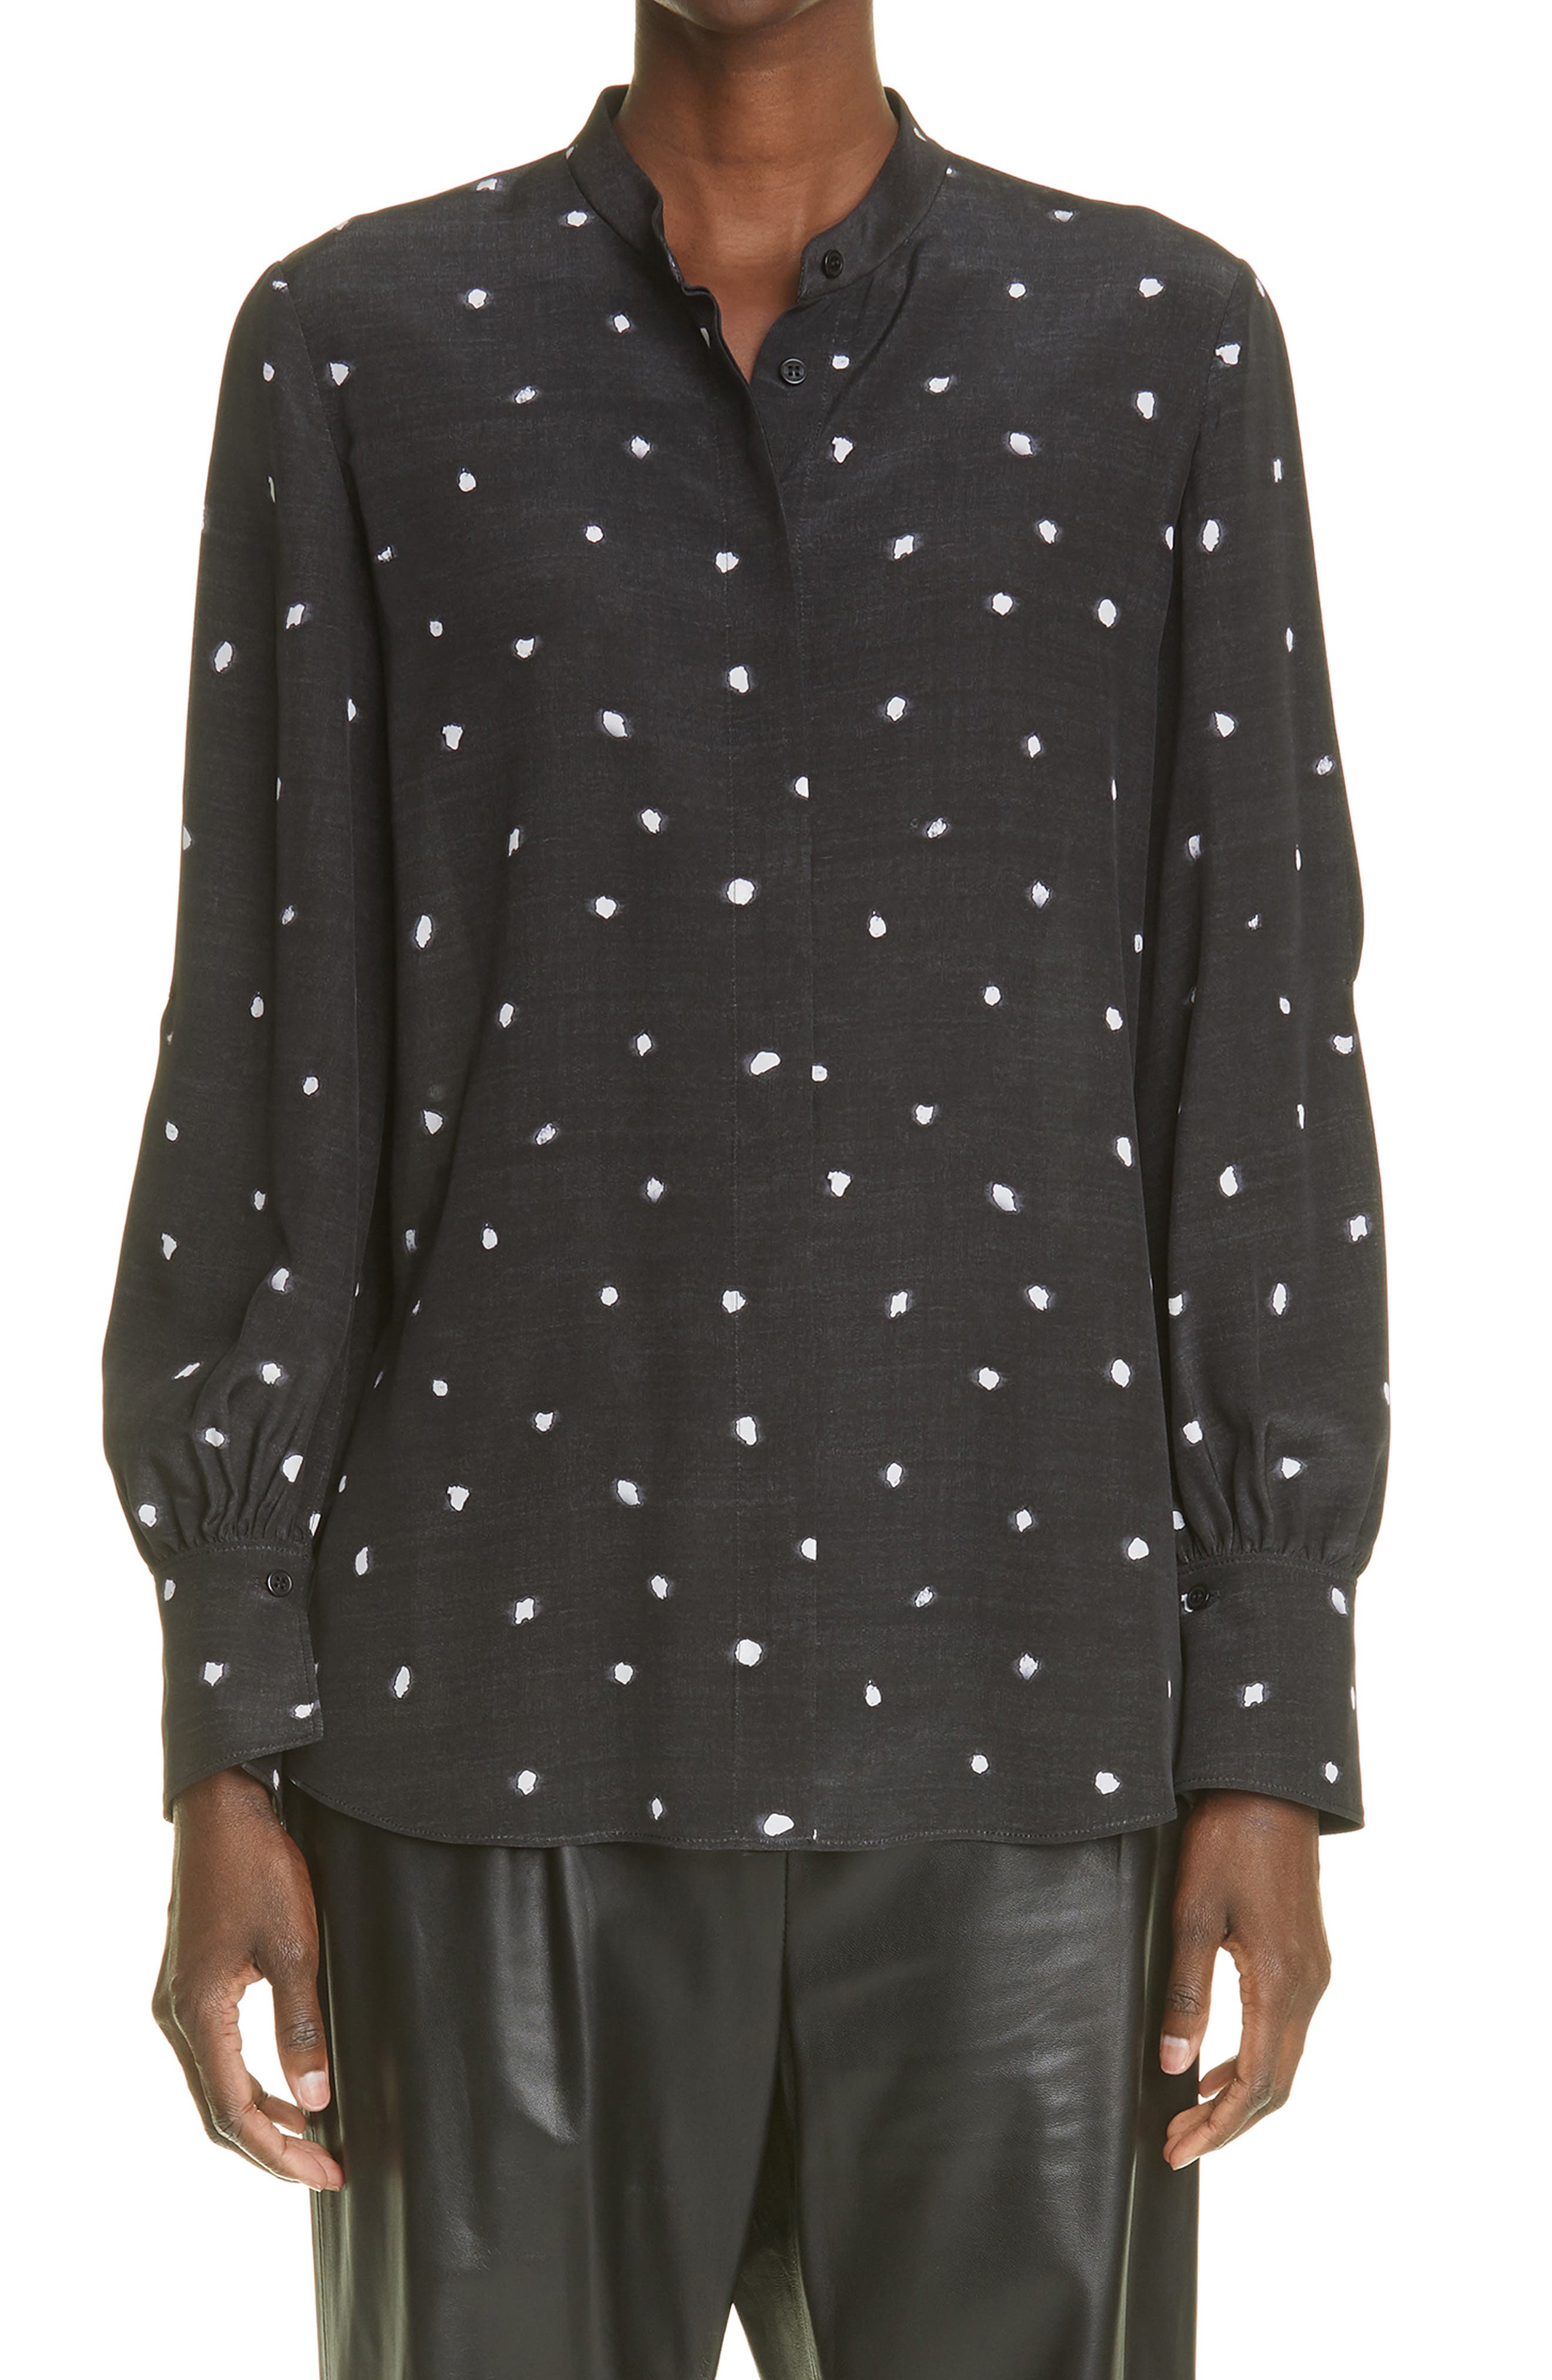 Altuzarra Lamont Dot Silk Bishop Sleeve Blouse in Black Dot at Nordstrom, Size 4 Us